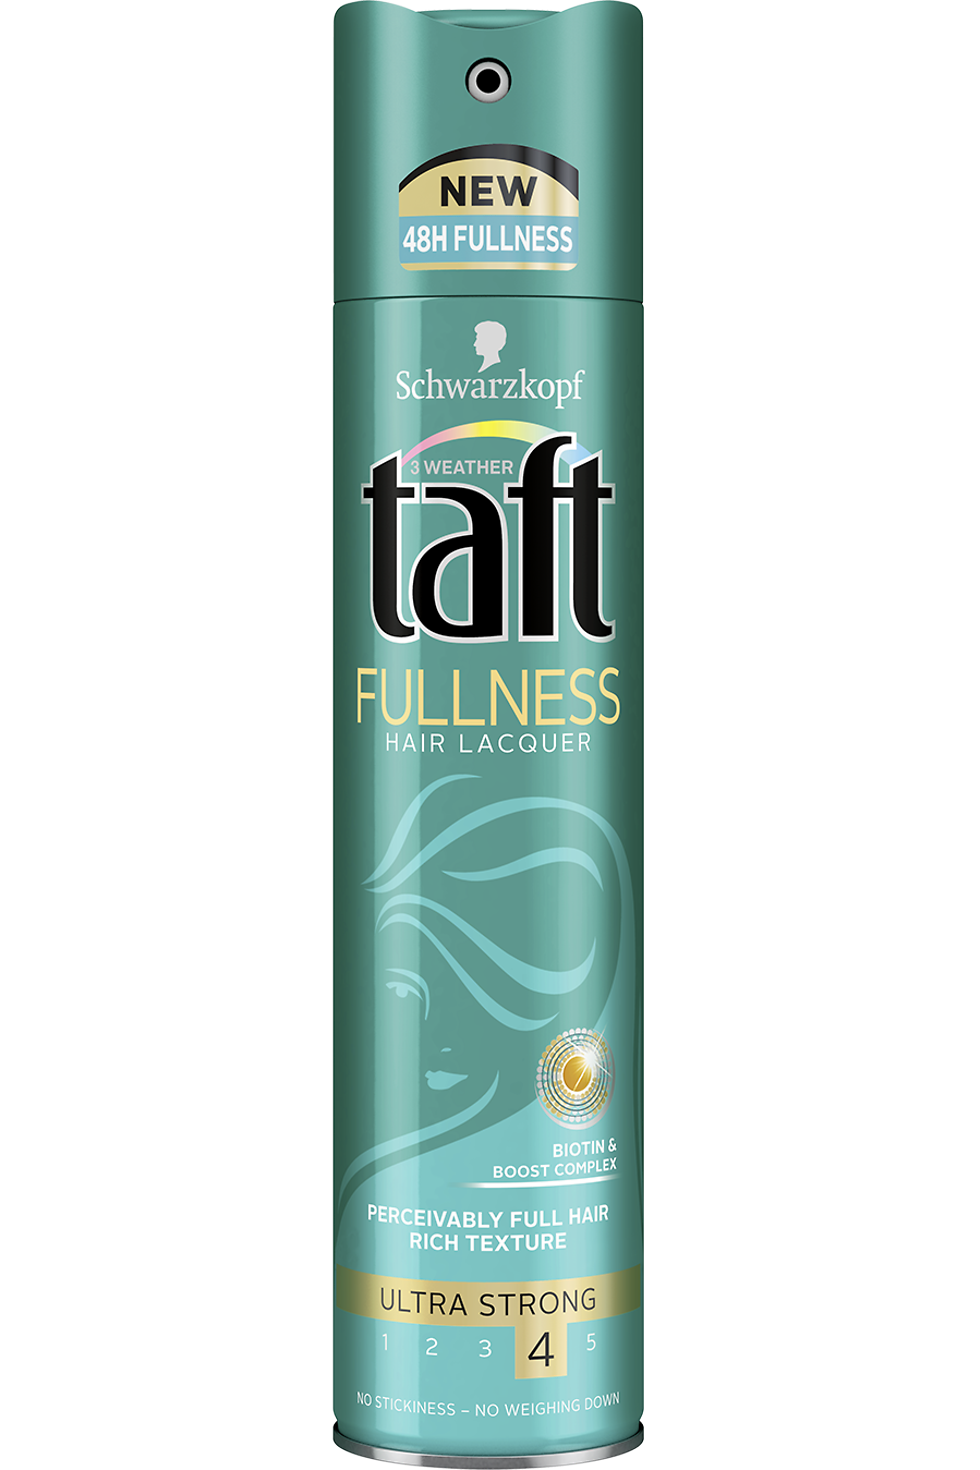 Taft FULLNESS lakier do włosów, 250 ml